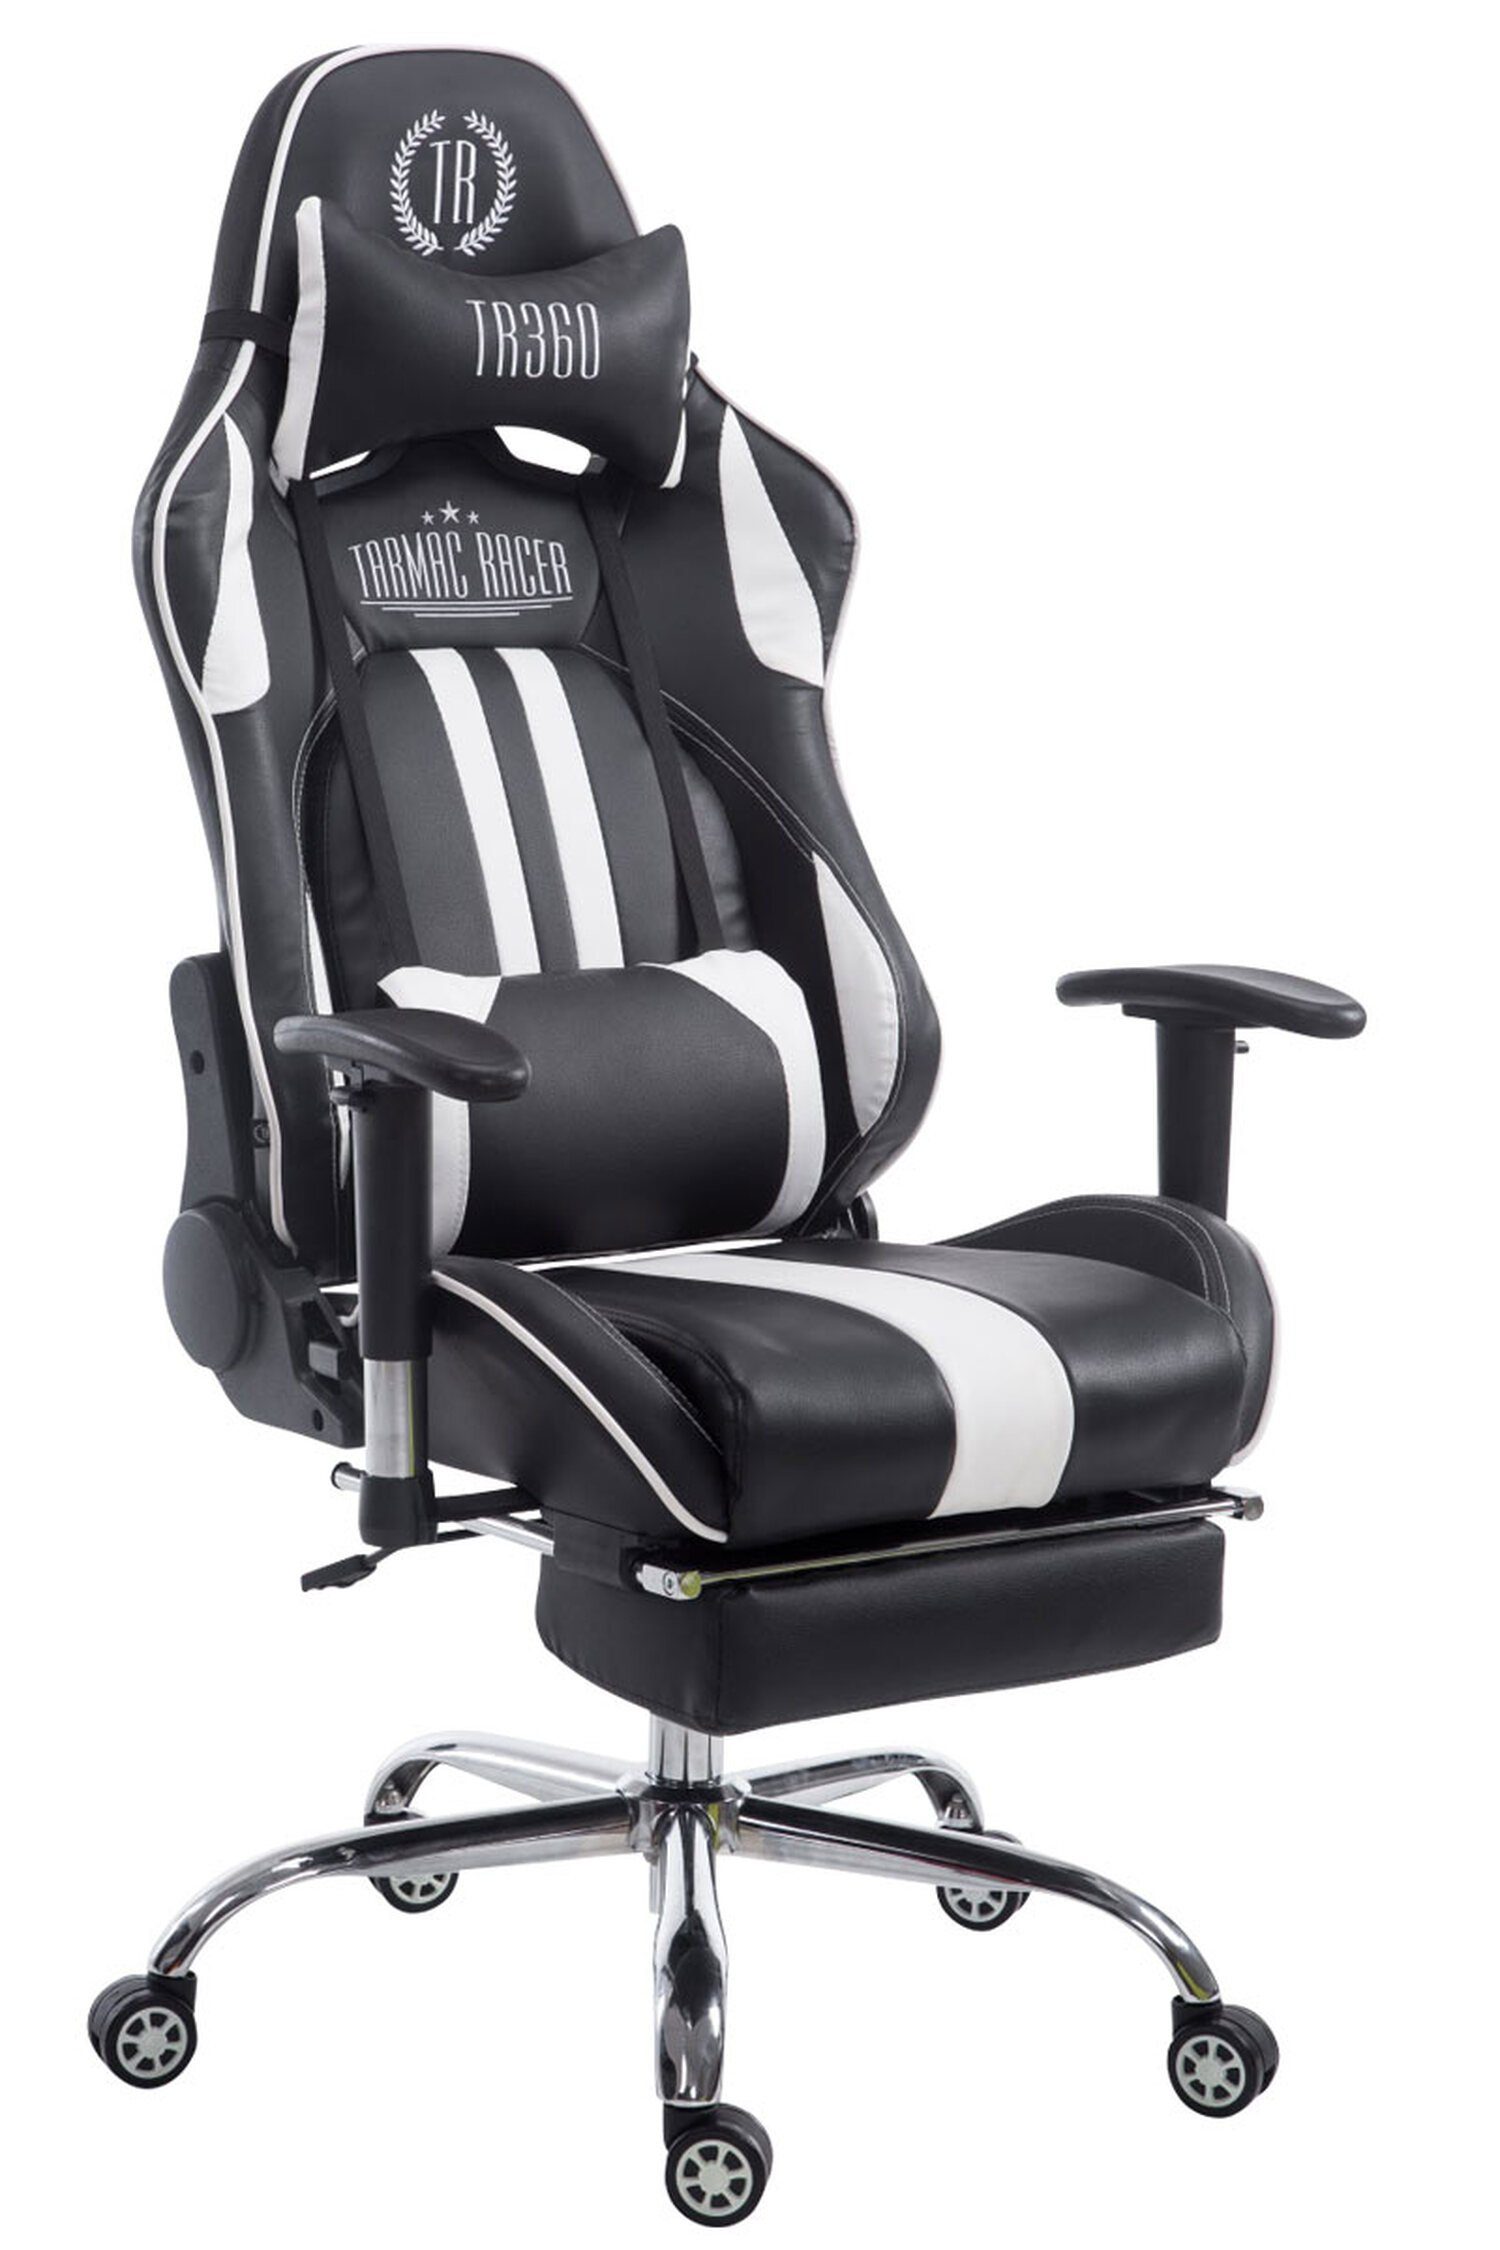 TPFLiving Gaming-Stuhl Limitless-2 mit bequemer Rückenlehne - höhenverstellbar - 360° drehbar (Schreibtischstuhl, Drehstuhl, Gamingstuhl, Racingstuhl, Chefsessel), Gestell: Metall chrom - Sitzfläche: Kunstleder schwarz/weiß